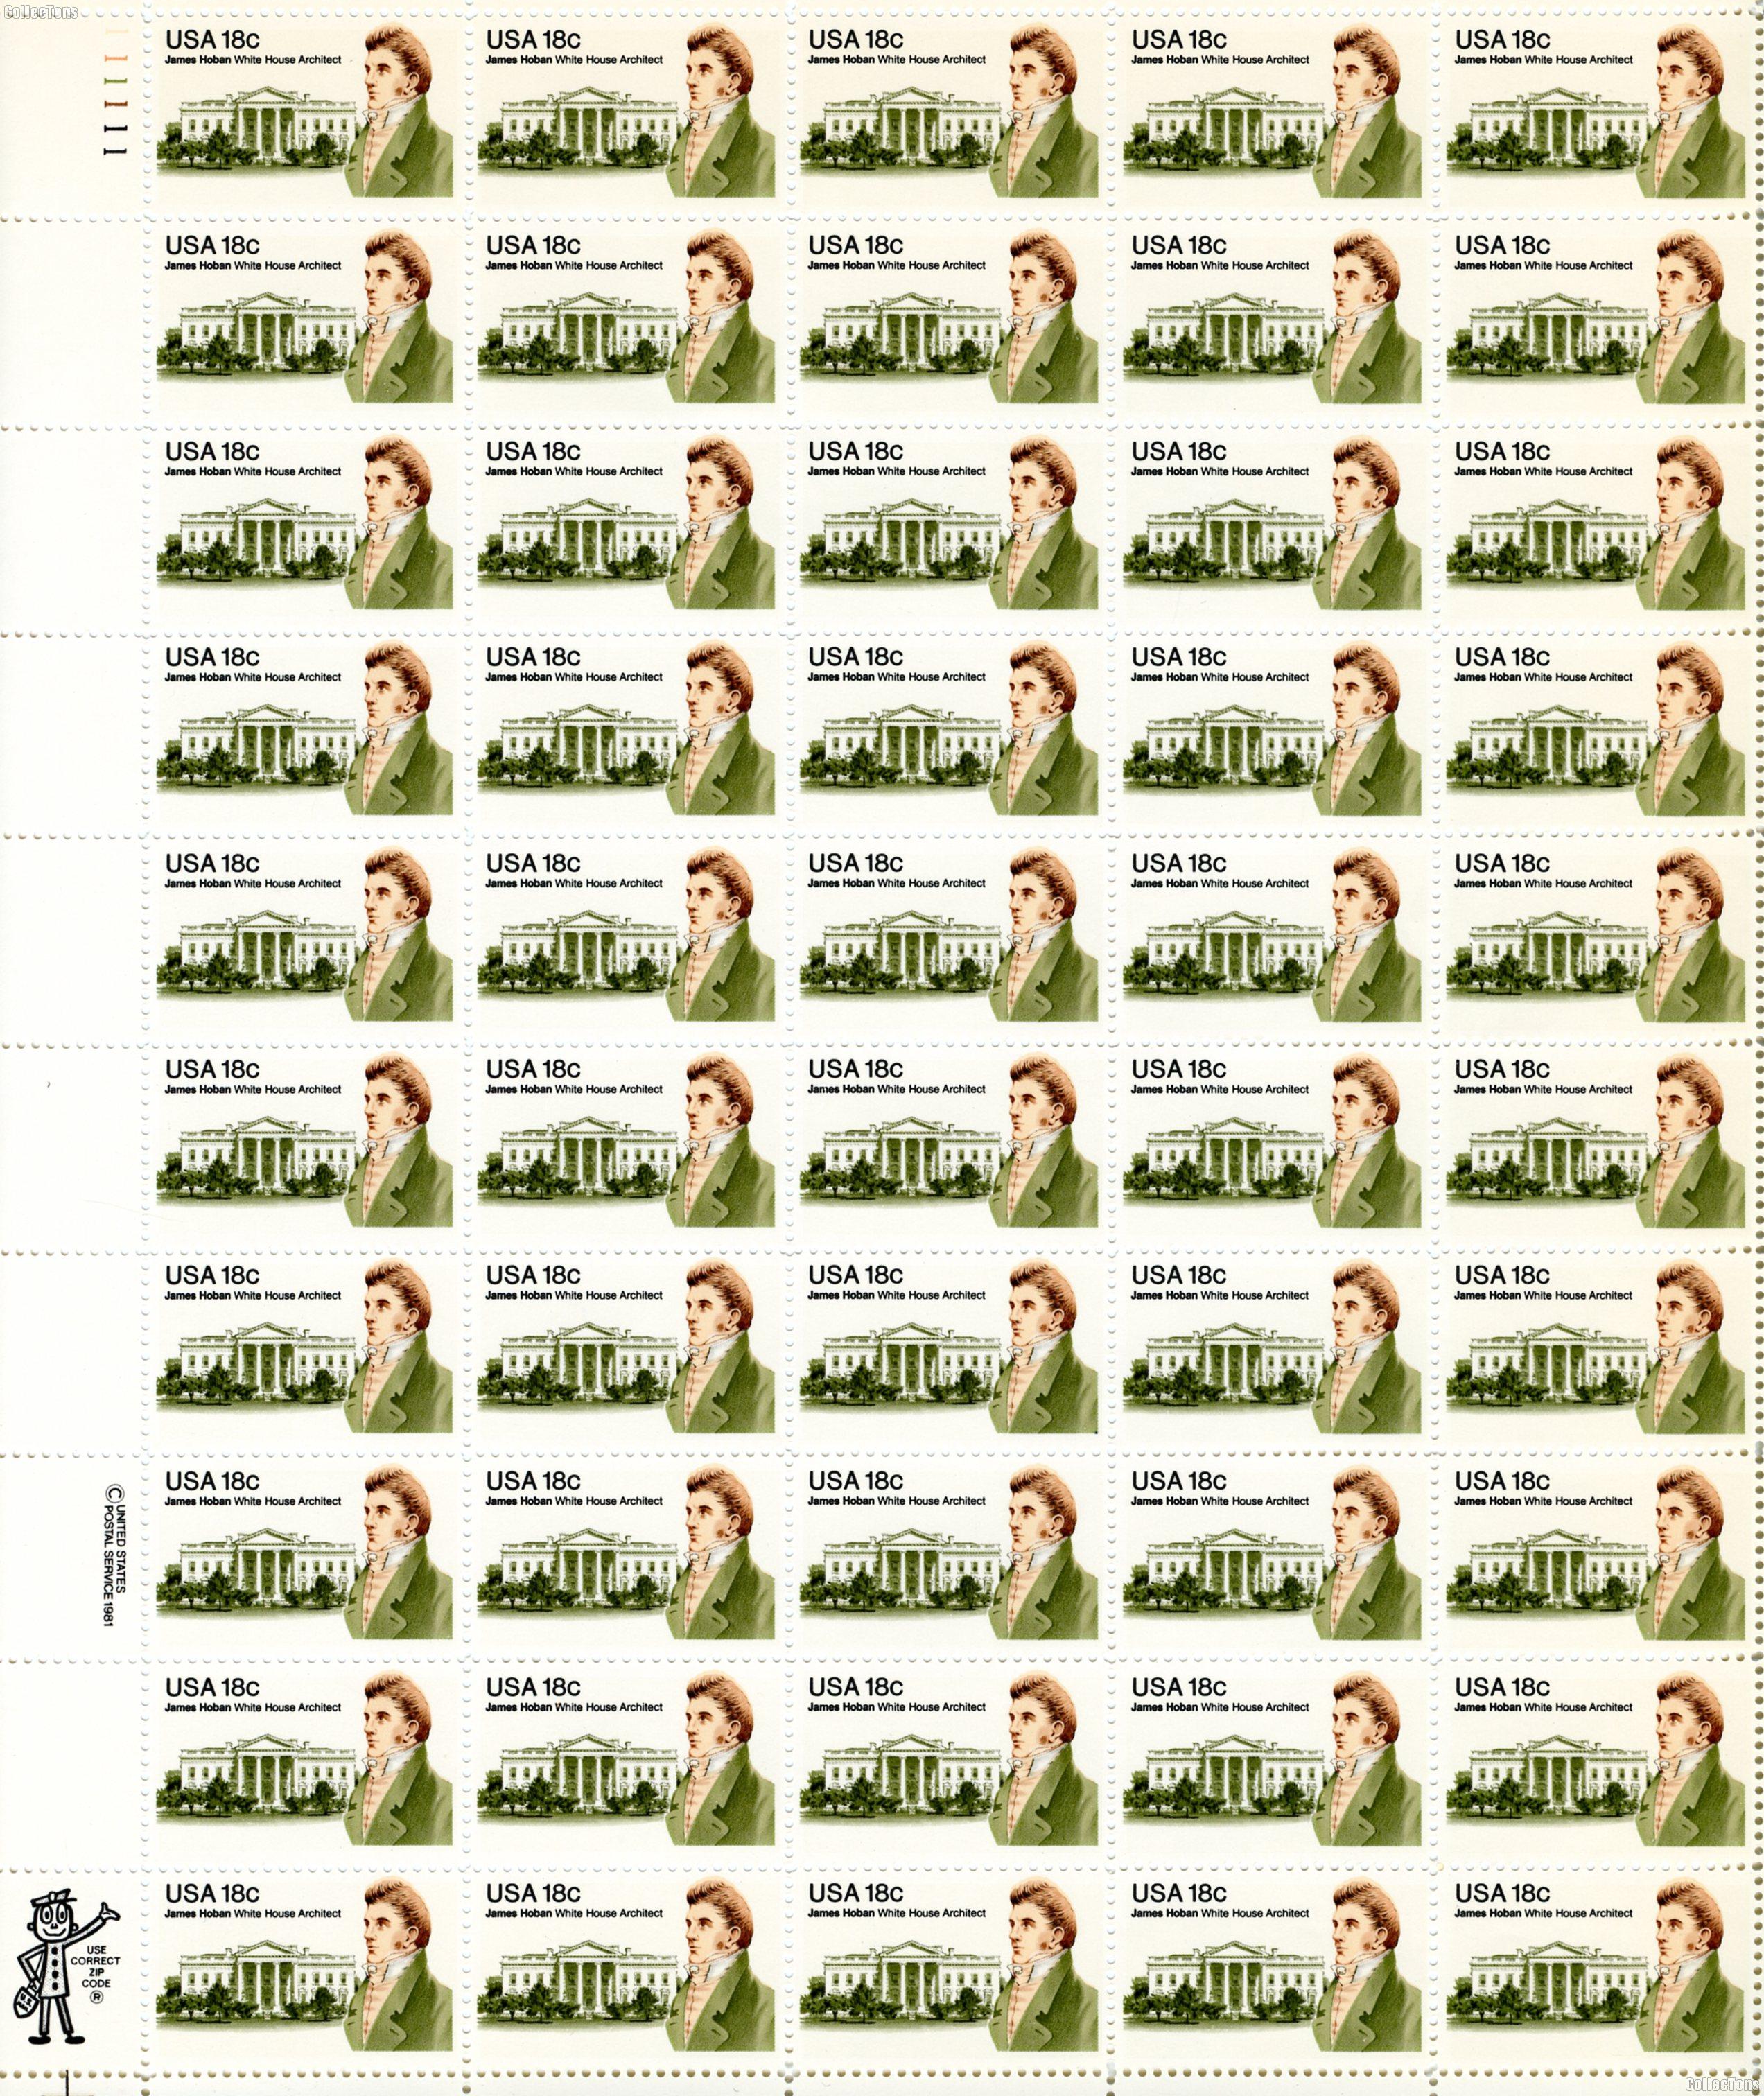 1981 James Hoban 18 Cent US Postage Stamp MNH Sheet of 50 Scott #1935